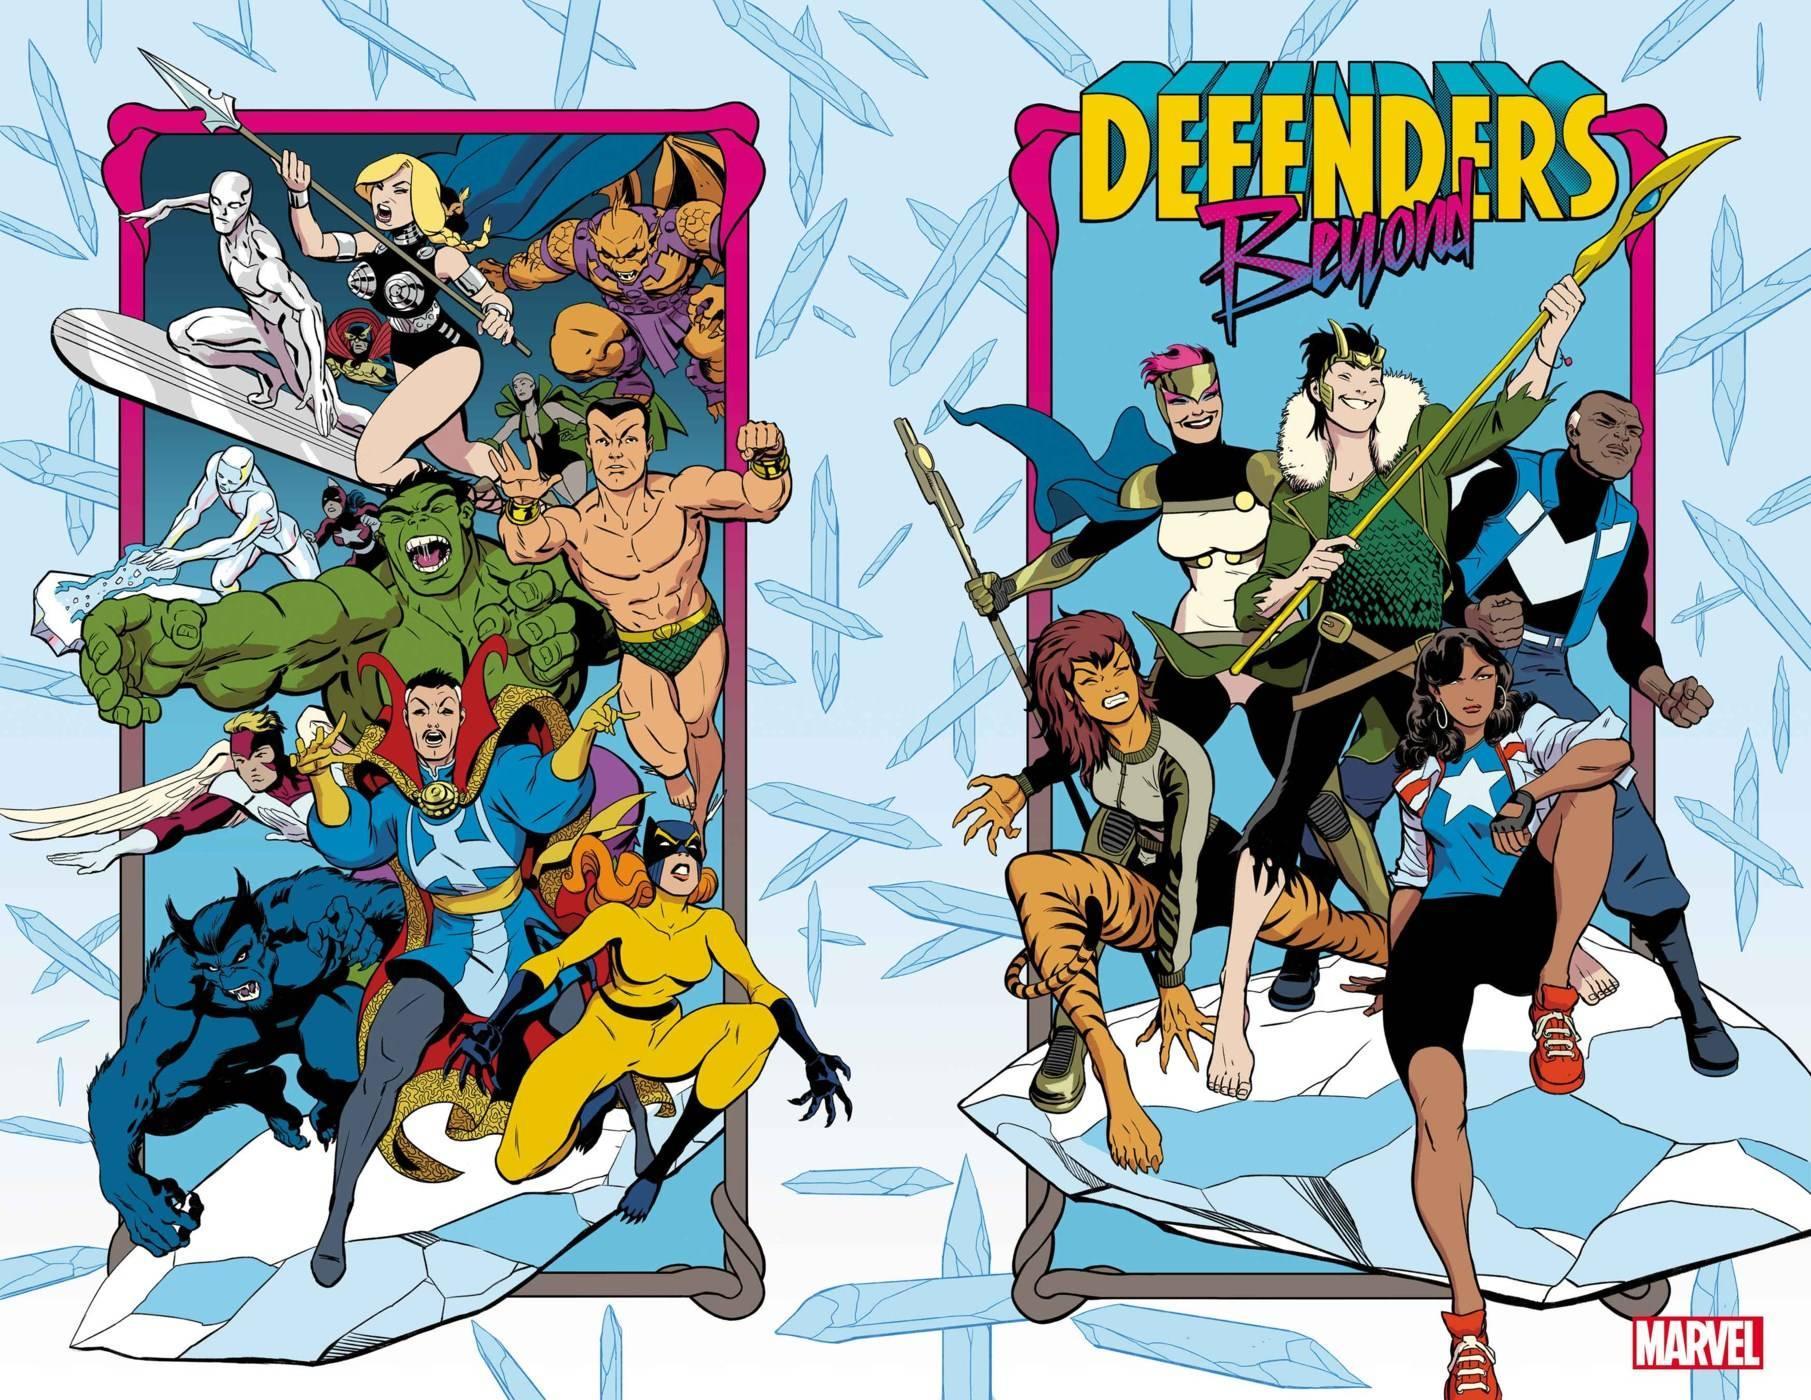 DEFENDERS BEYOND #1 - Kings Comics